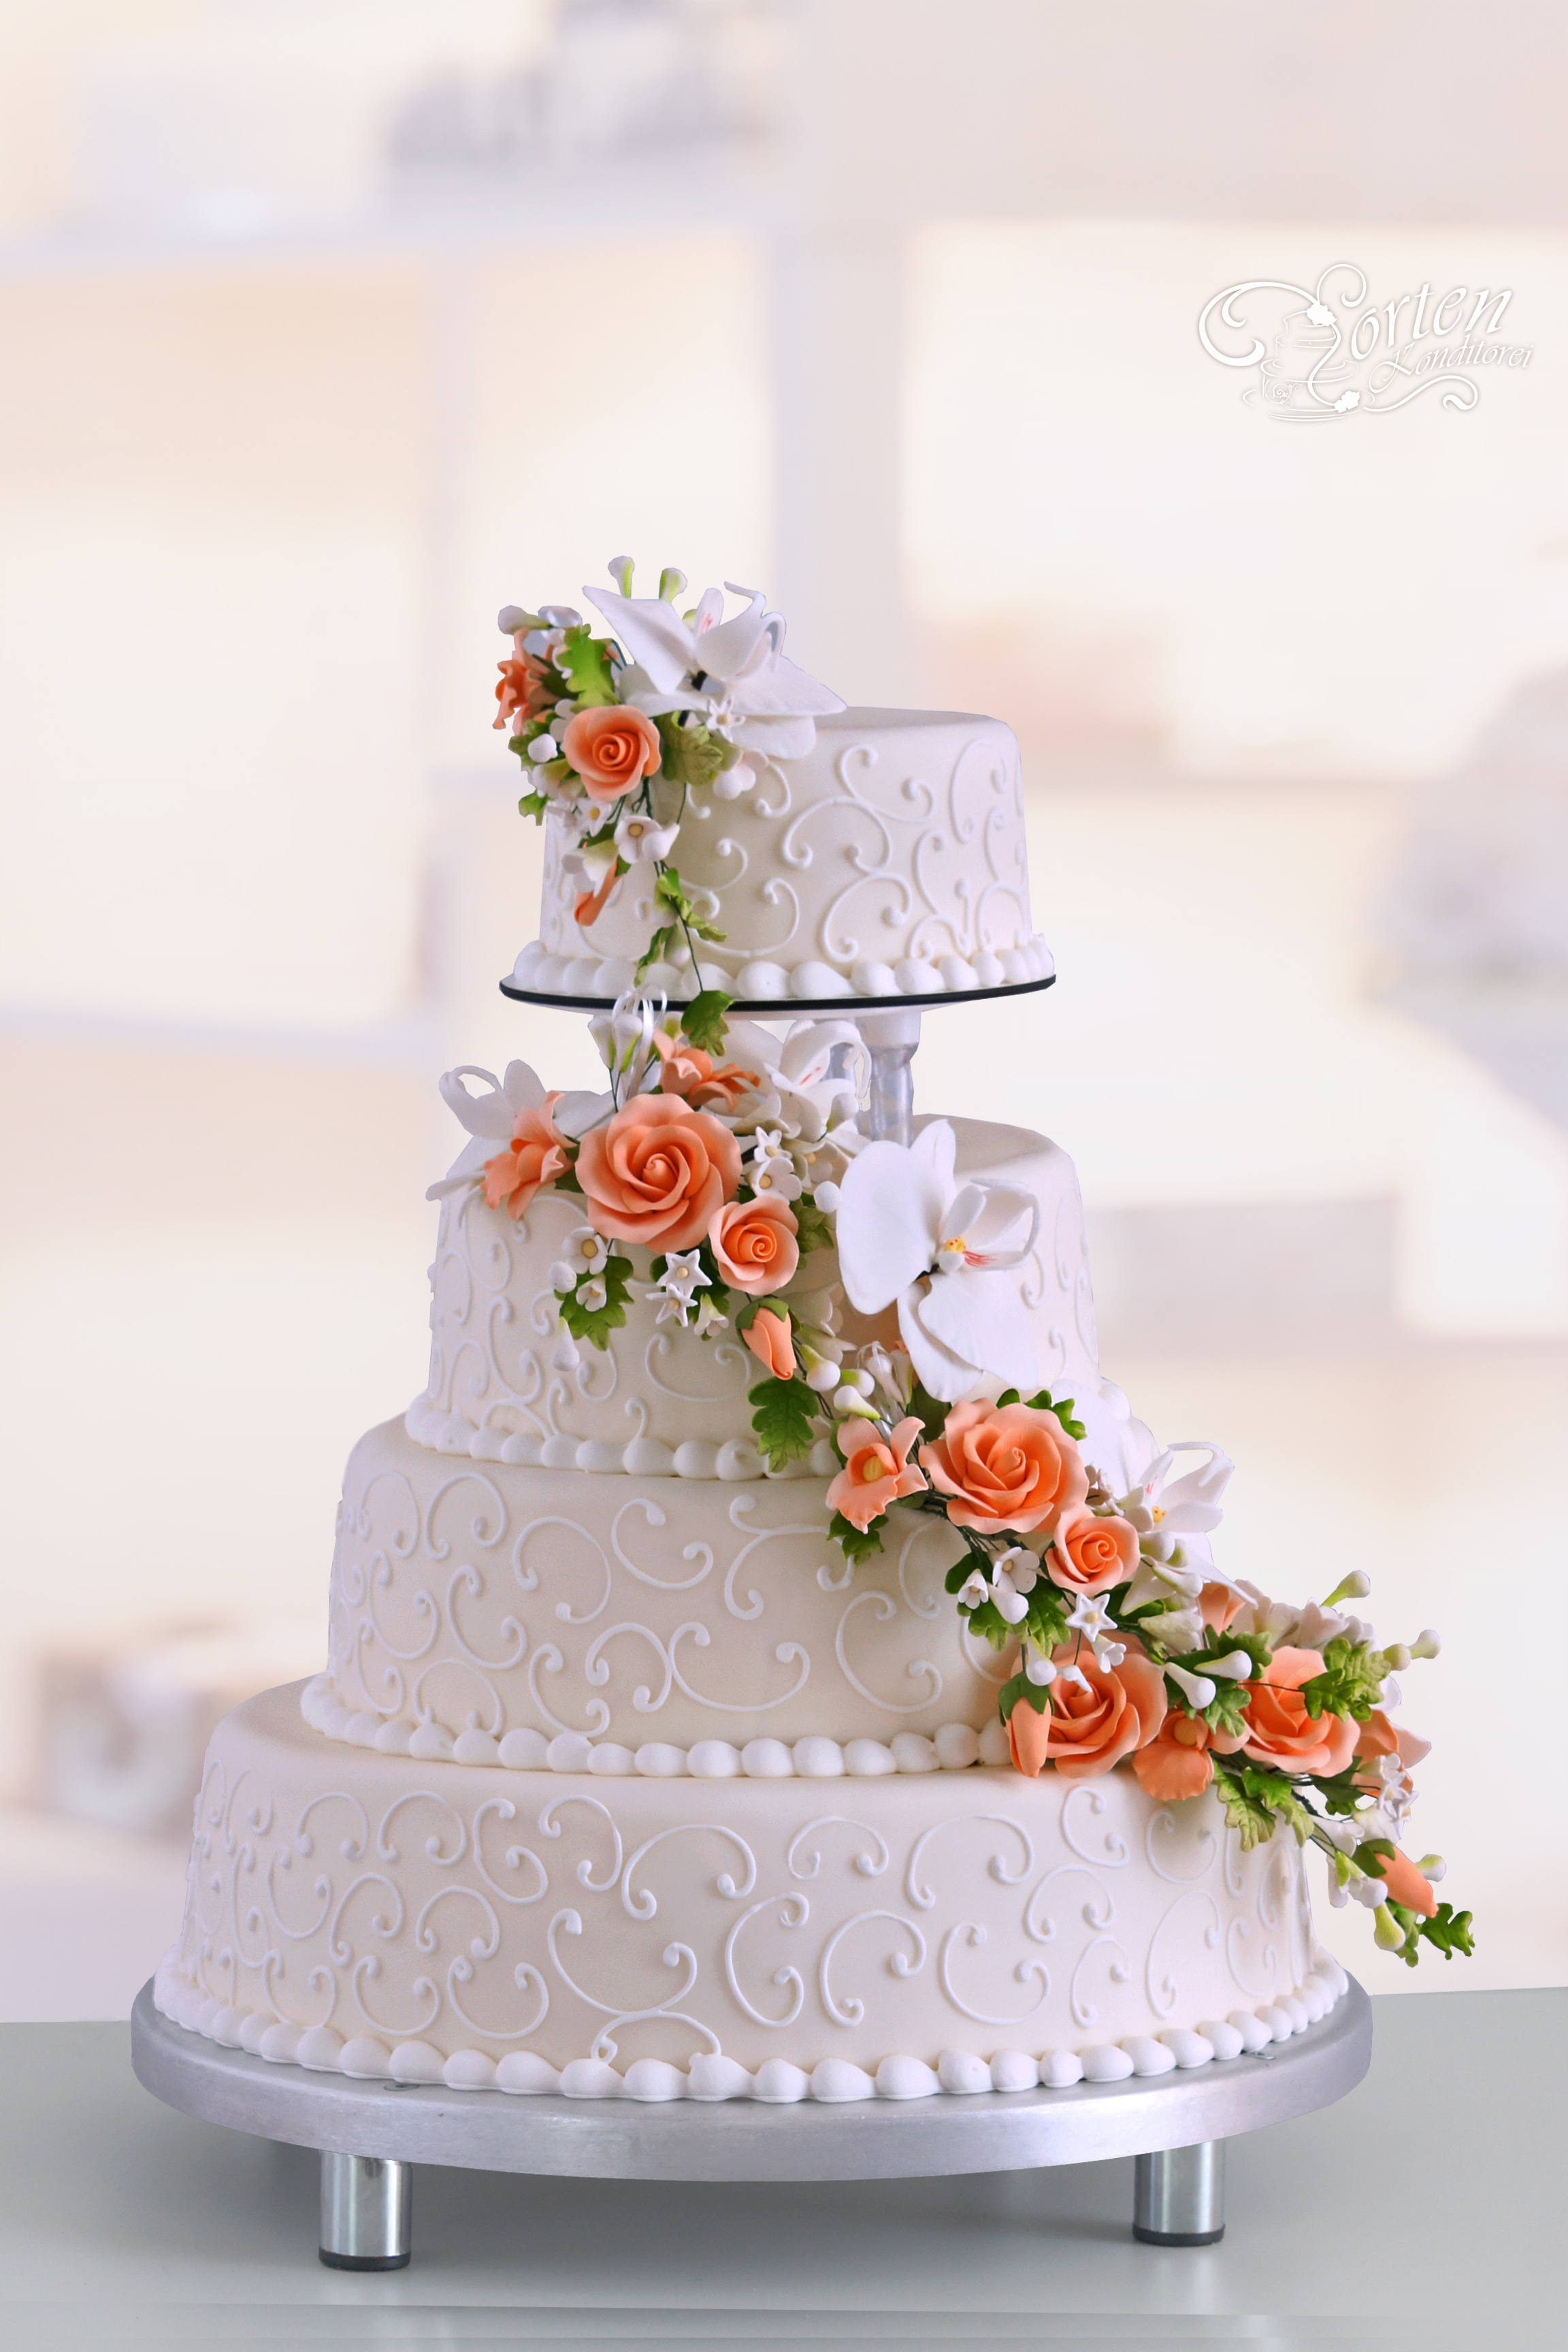 Vierstöckige Hochzeitstorte in Champagner-Ton mit aufwendiger Blumenranke in orange mit weißen-Orchideen. Die obere Torte ist getrennt, diese kann man z. B. einfrieren und später verzehren.